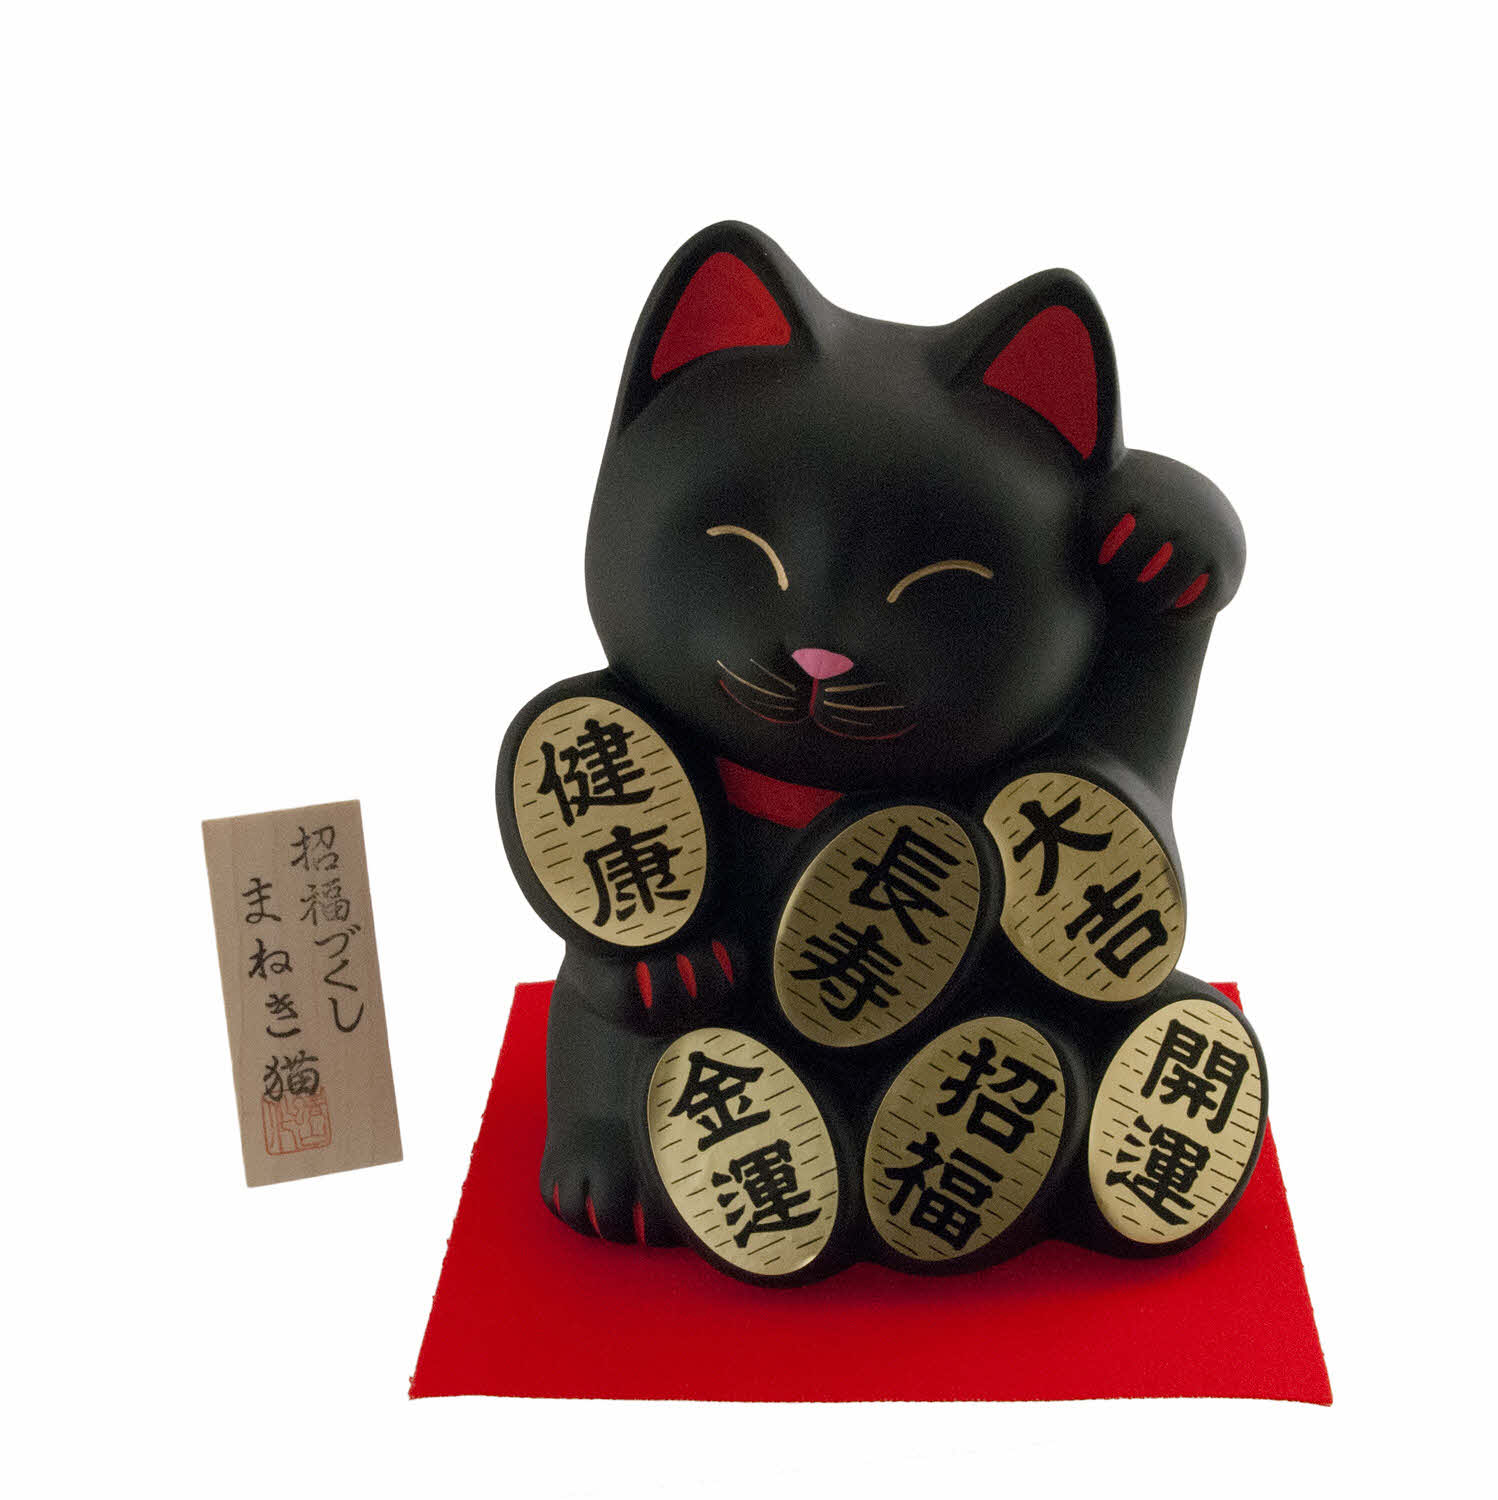 Tirelire en porcelaine japonaise 4.5 pouces,chat porte-bonheur